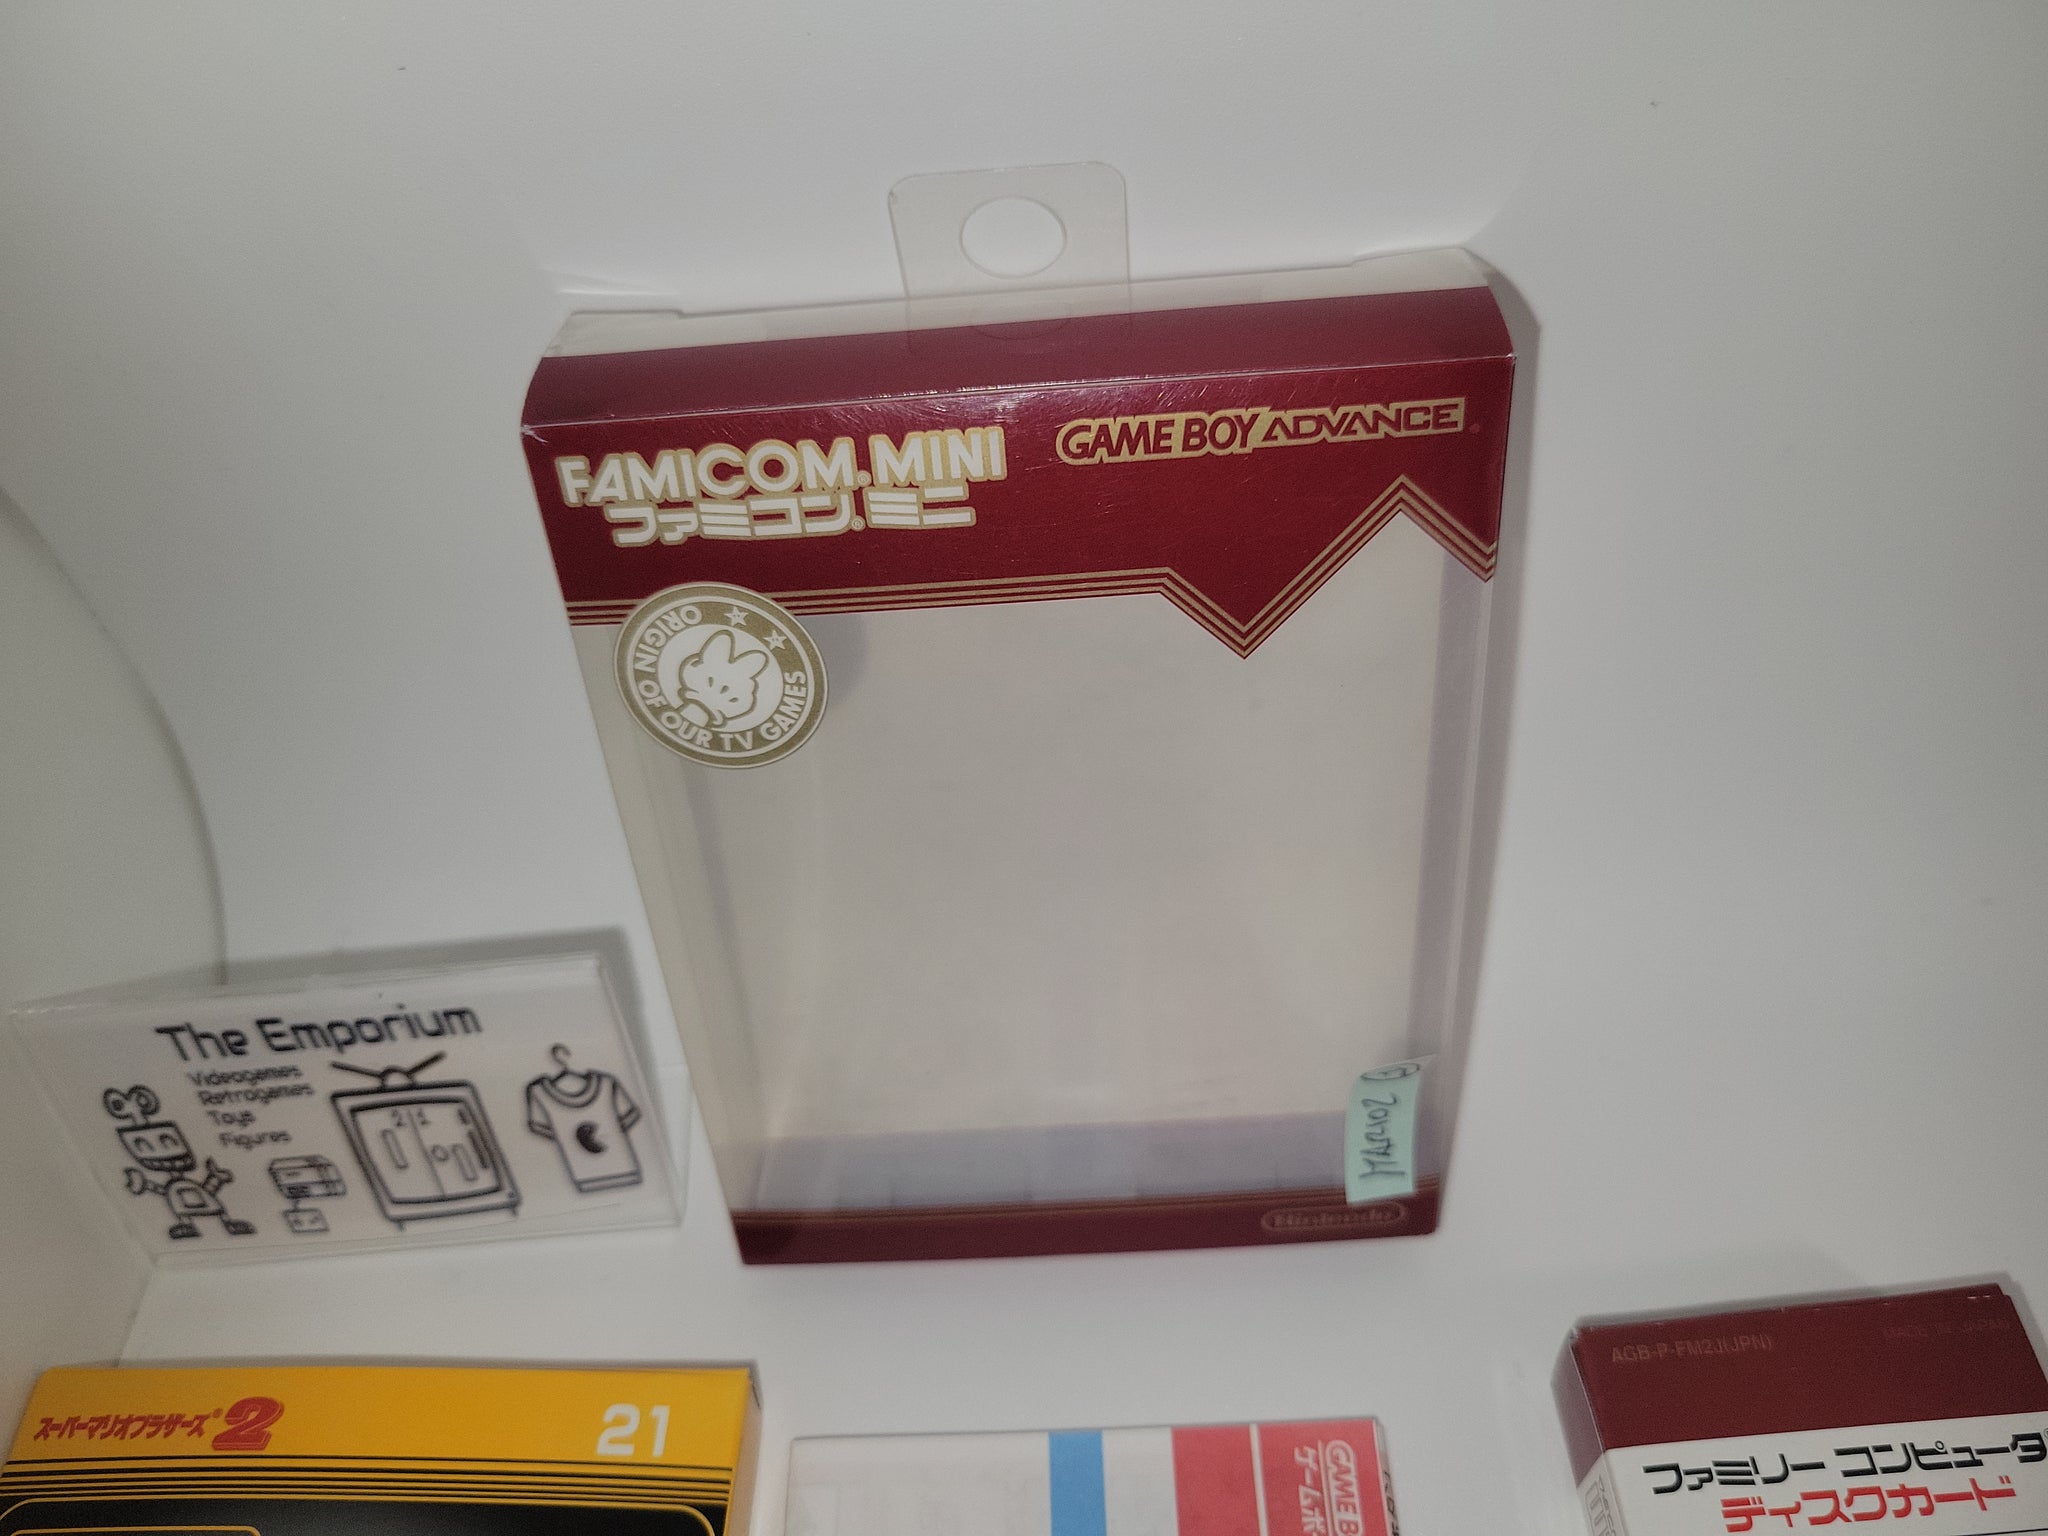 Famicom Mini Series: Super Mario Bros. (Seminovo) - Game Boy Advance